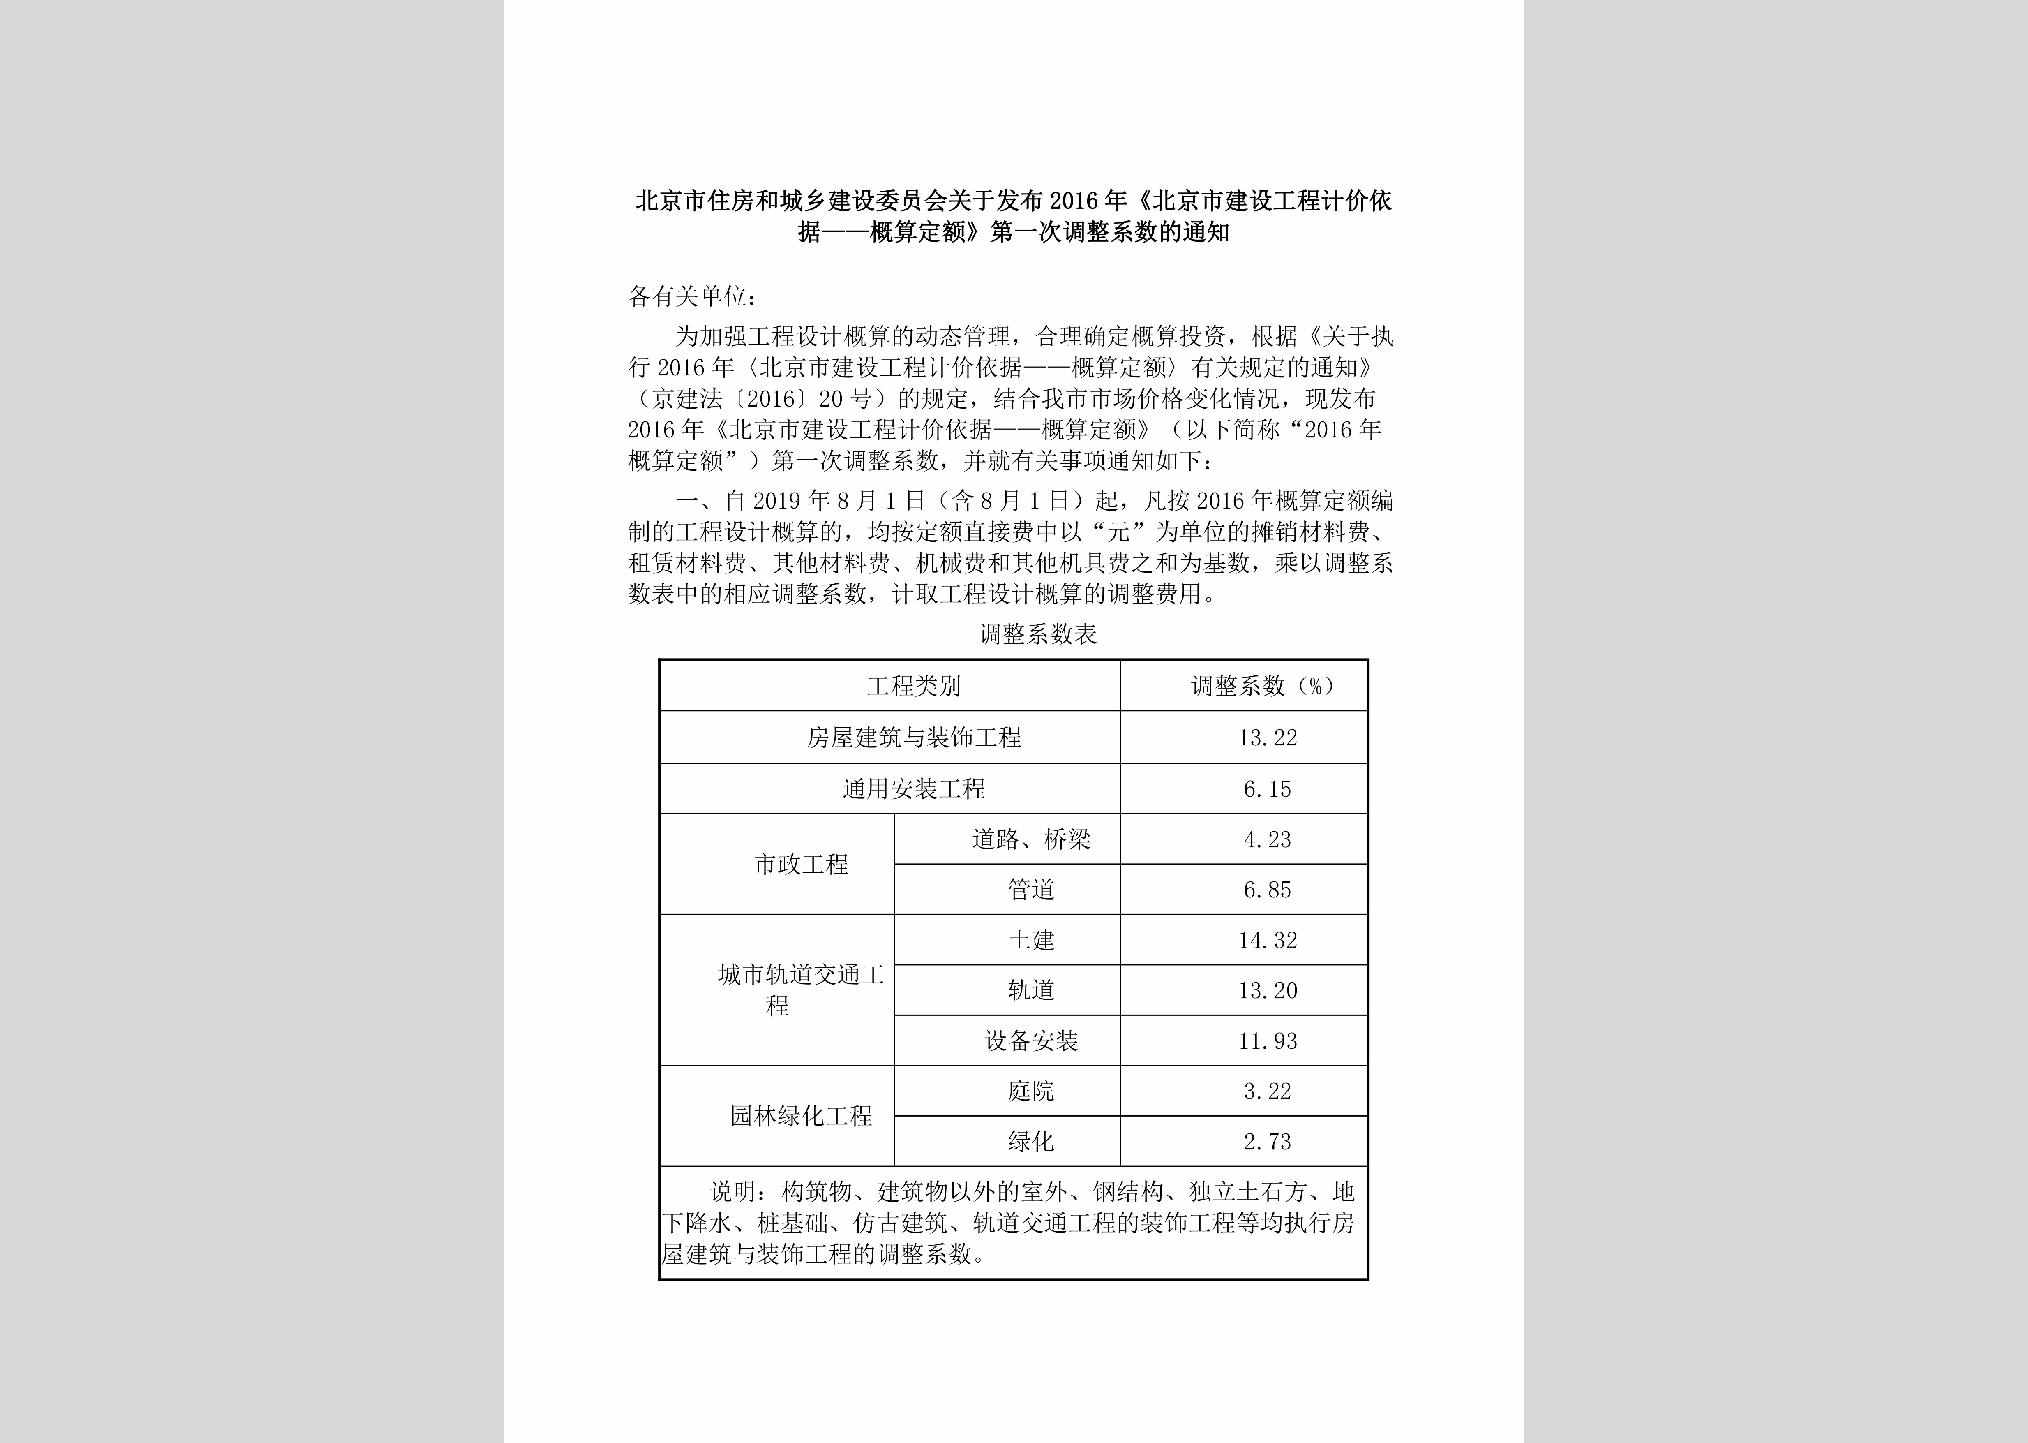 BJ-JSGCJJYJ-2019：北京市住房和城乡建设委员会关于发布2016年《北京市建设工程计价依据——概算定额》第一次调整系数的通知